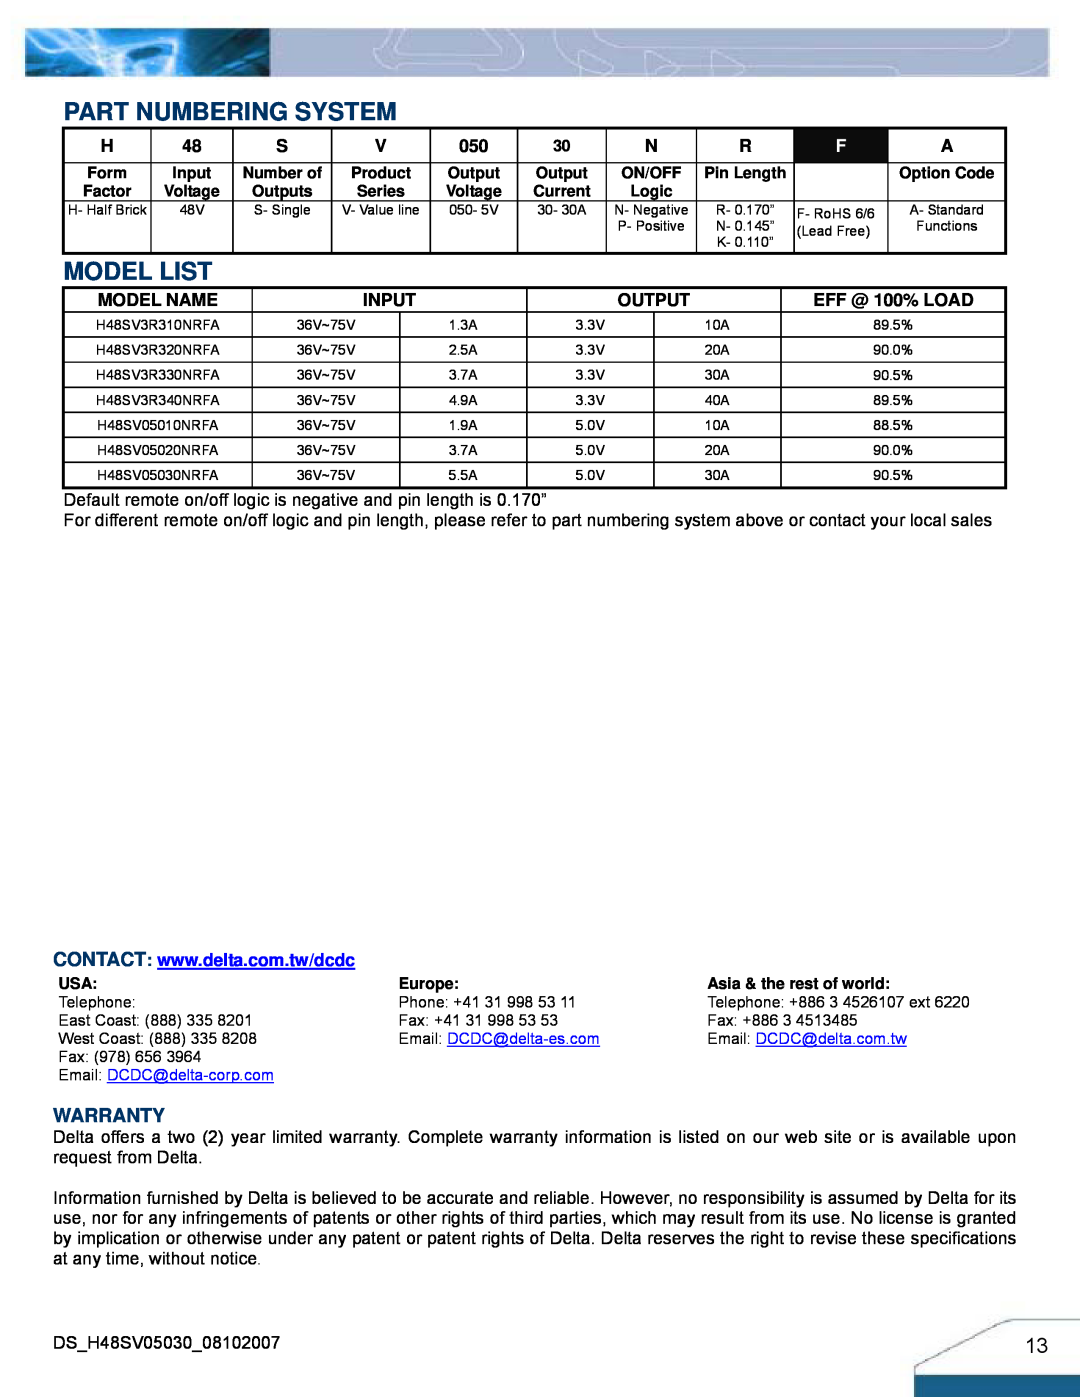 Delta Electronics H48SV manual Part Numbering System, Model List, Warranty, EFF @ 100% LOAD, Model Name, Input, Output 